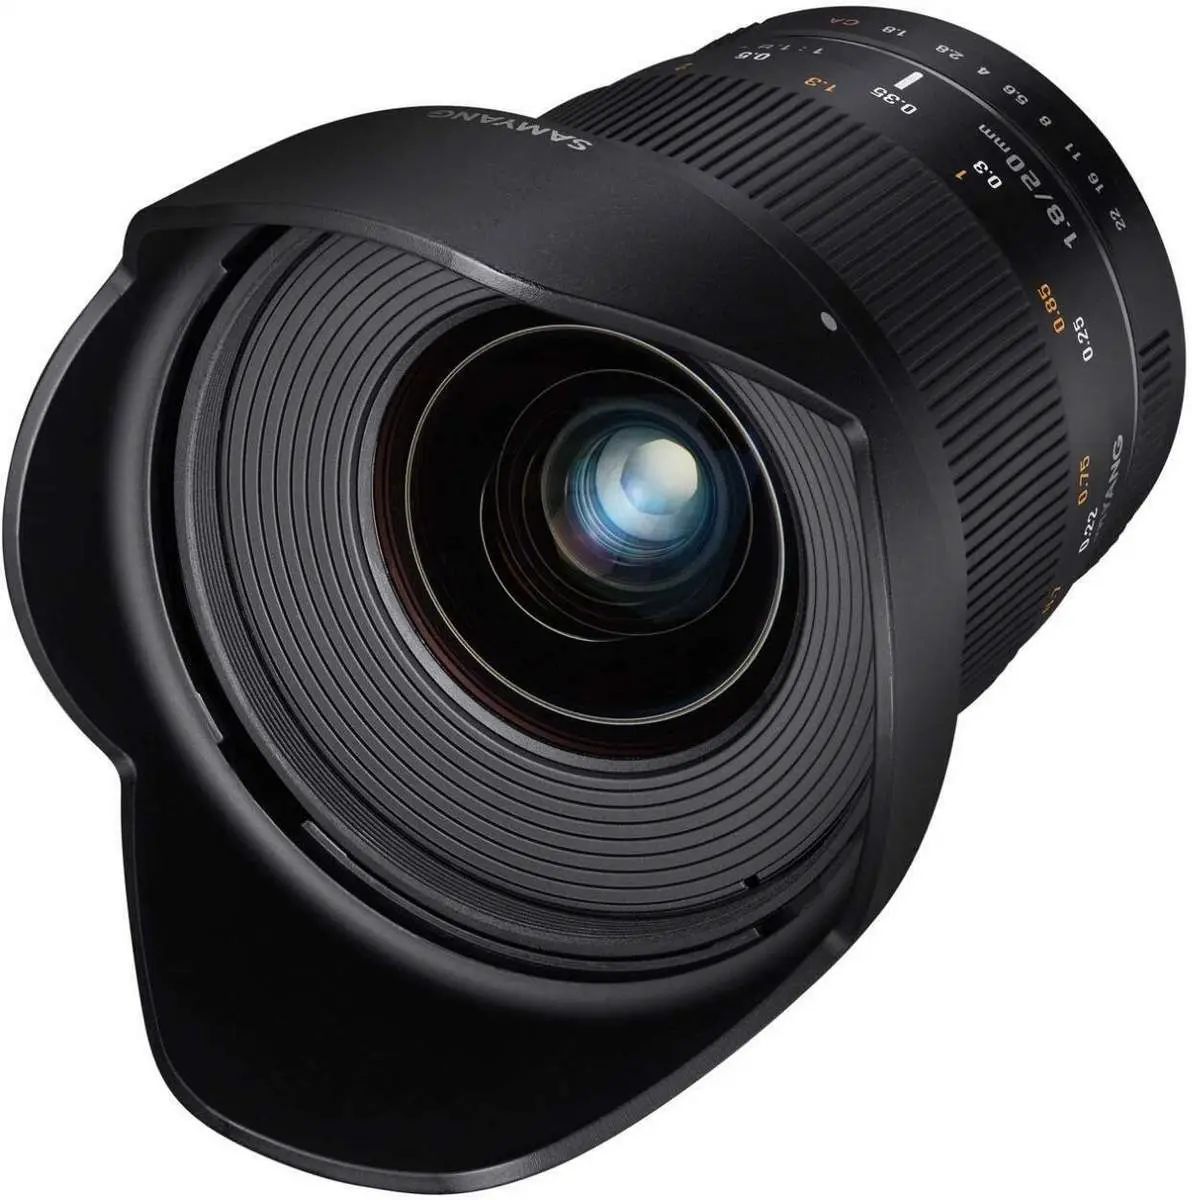 4. Samyang 24mm T1.5 ED AS UMC VDSLR II (Nikon) Lens